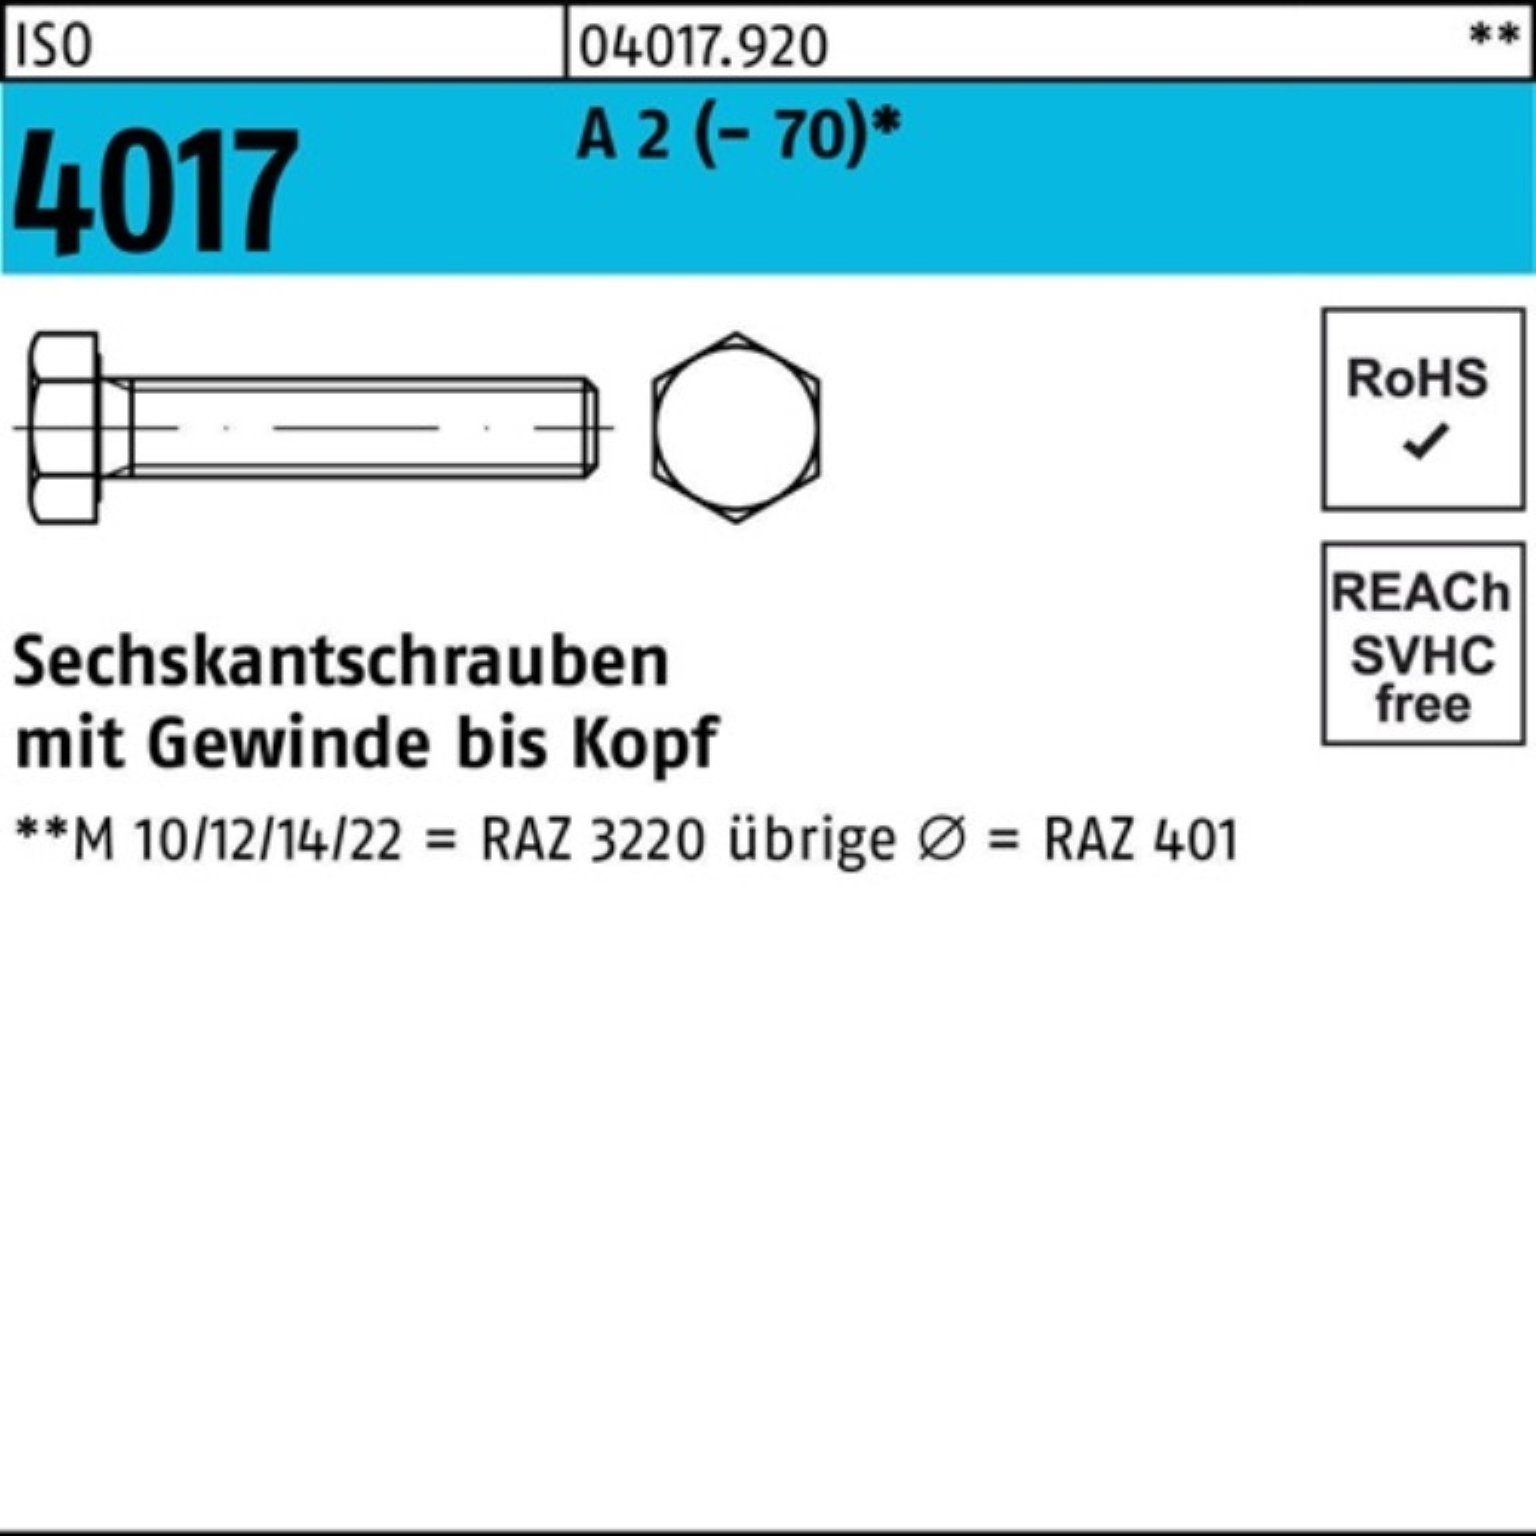 Bufab Sechskantschraube 100er Pack Sechskantschraube ISO 4017 VG M36x 110 A 2 (70) 1 Stück